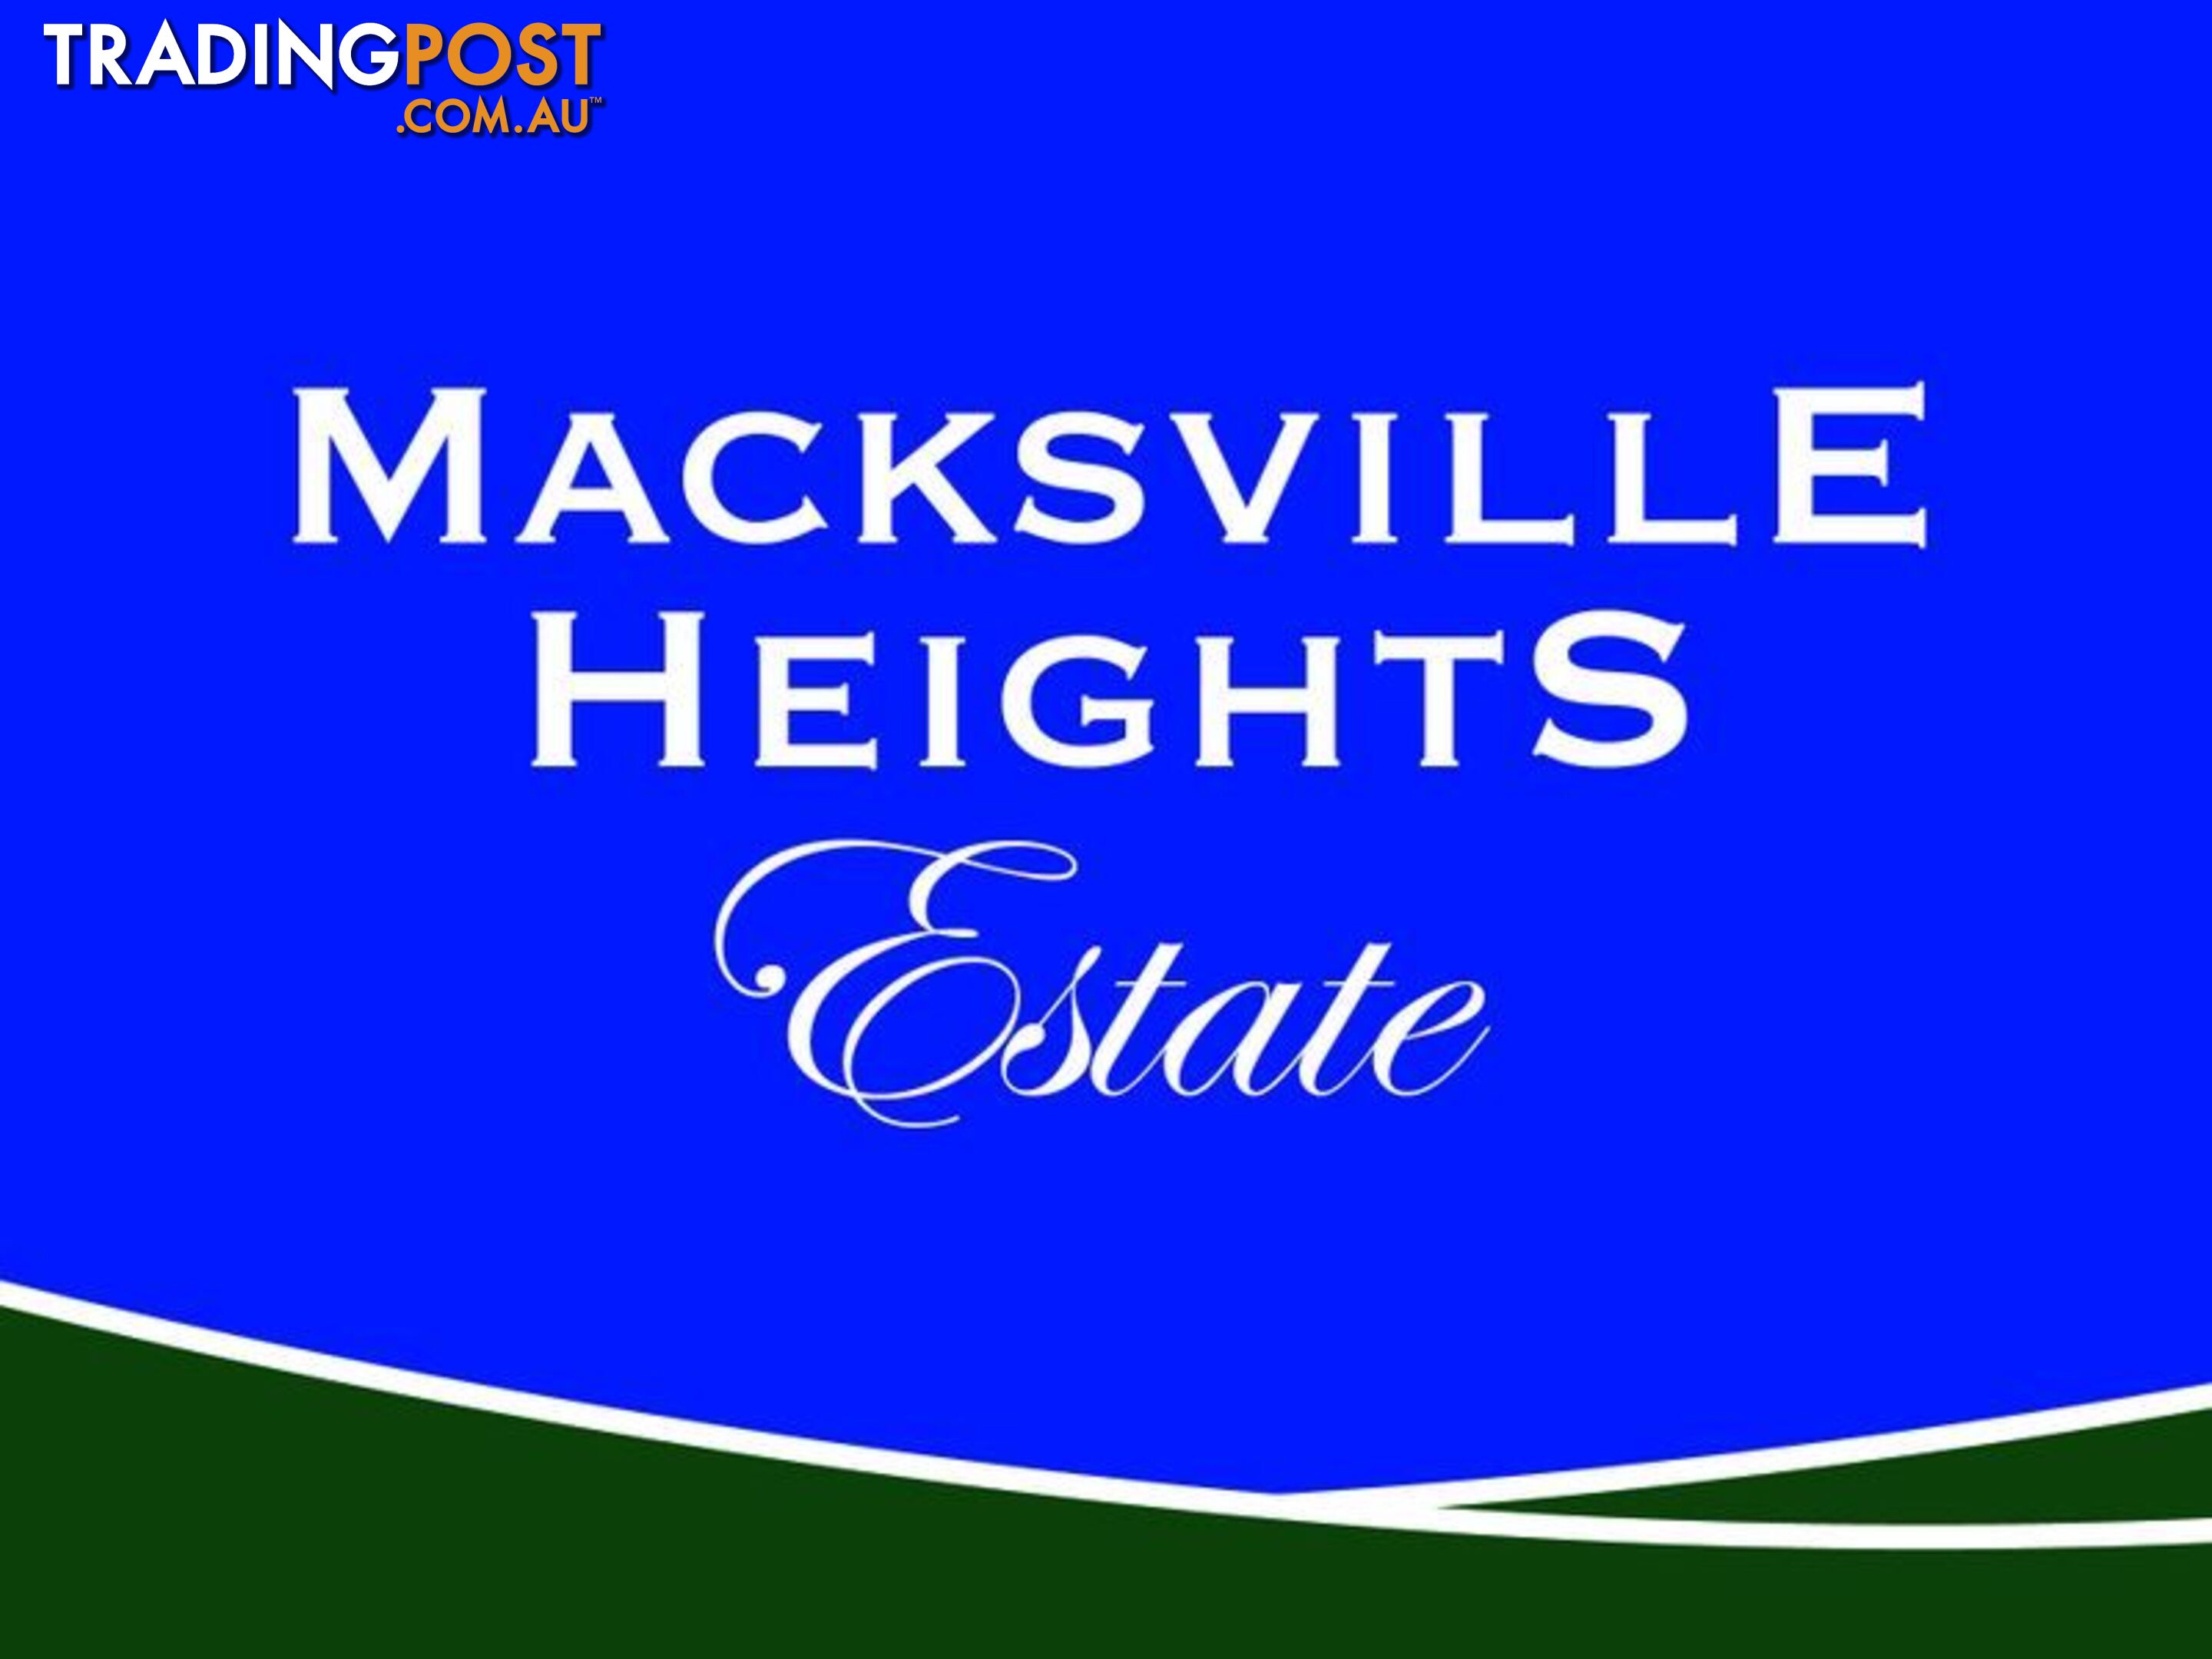 Lot 8 Macksville Heights Estate MACKSVILLE NSW 2447